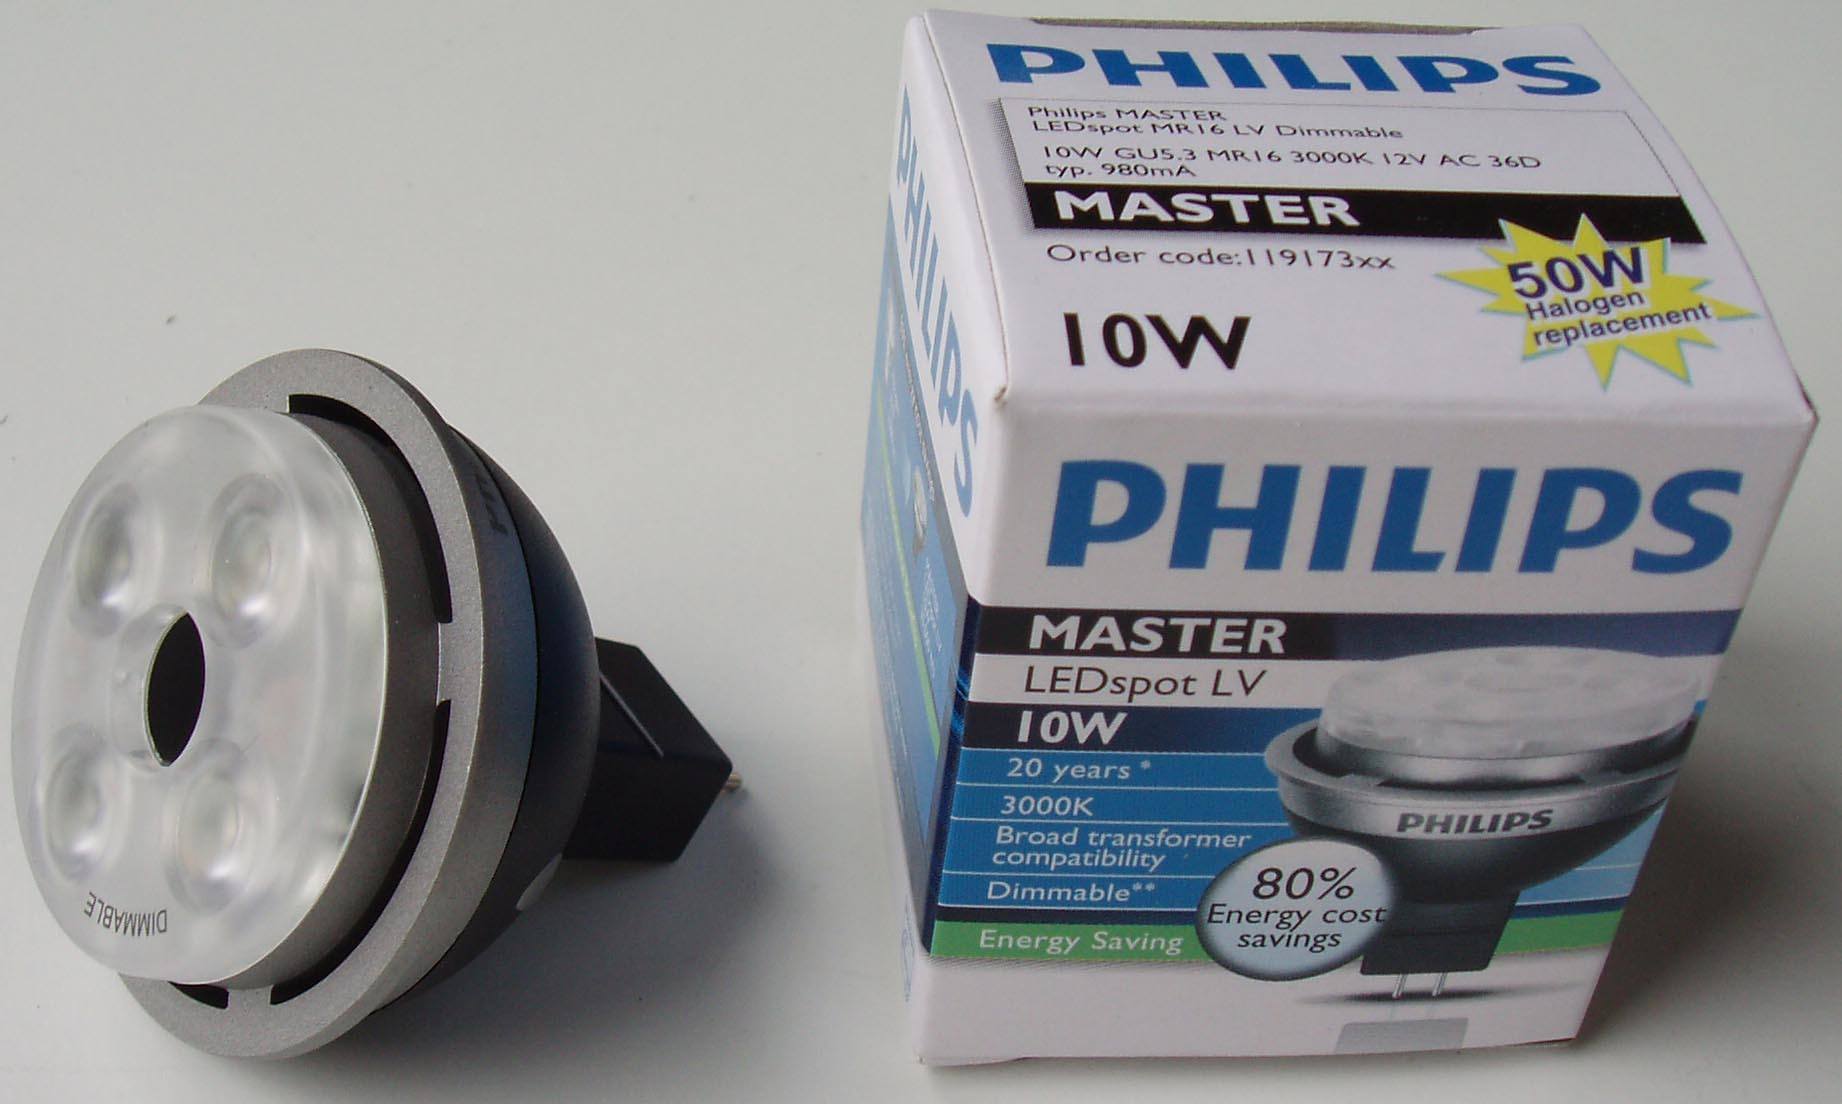 Philips MasterLEDspot LV 12V 10-50W